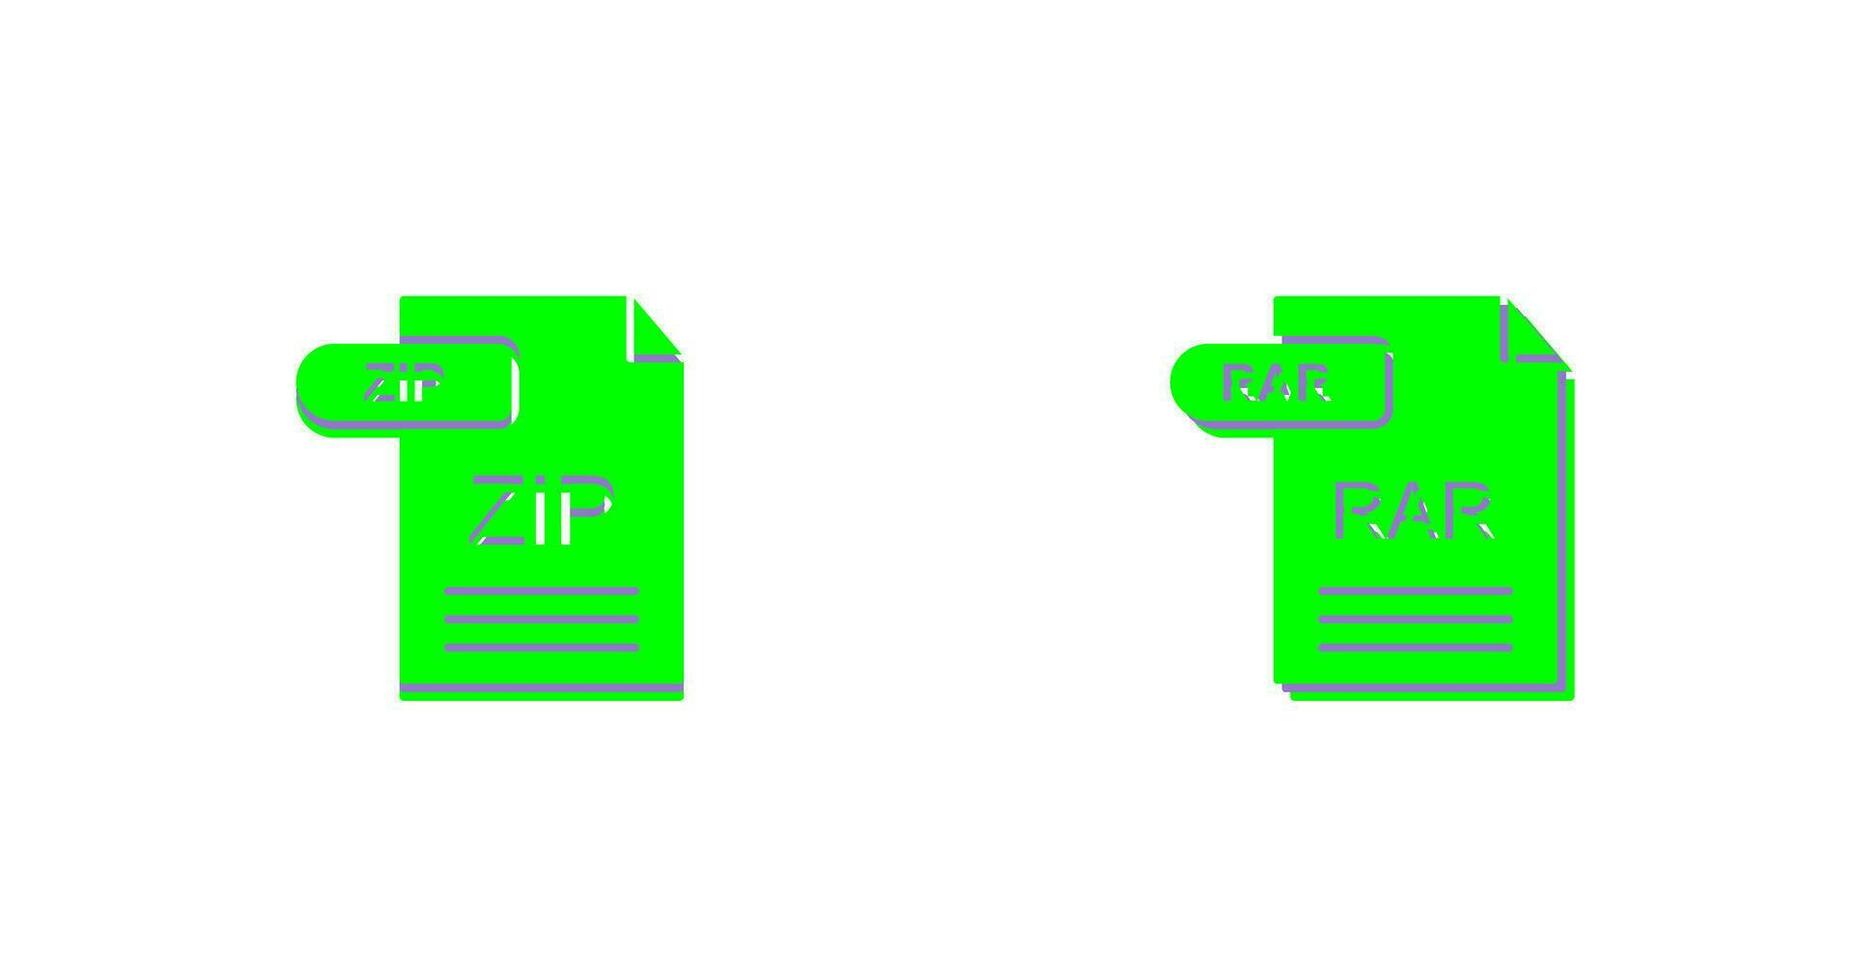 ZIP and RAR Icon vector